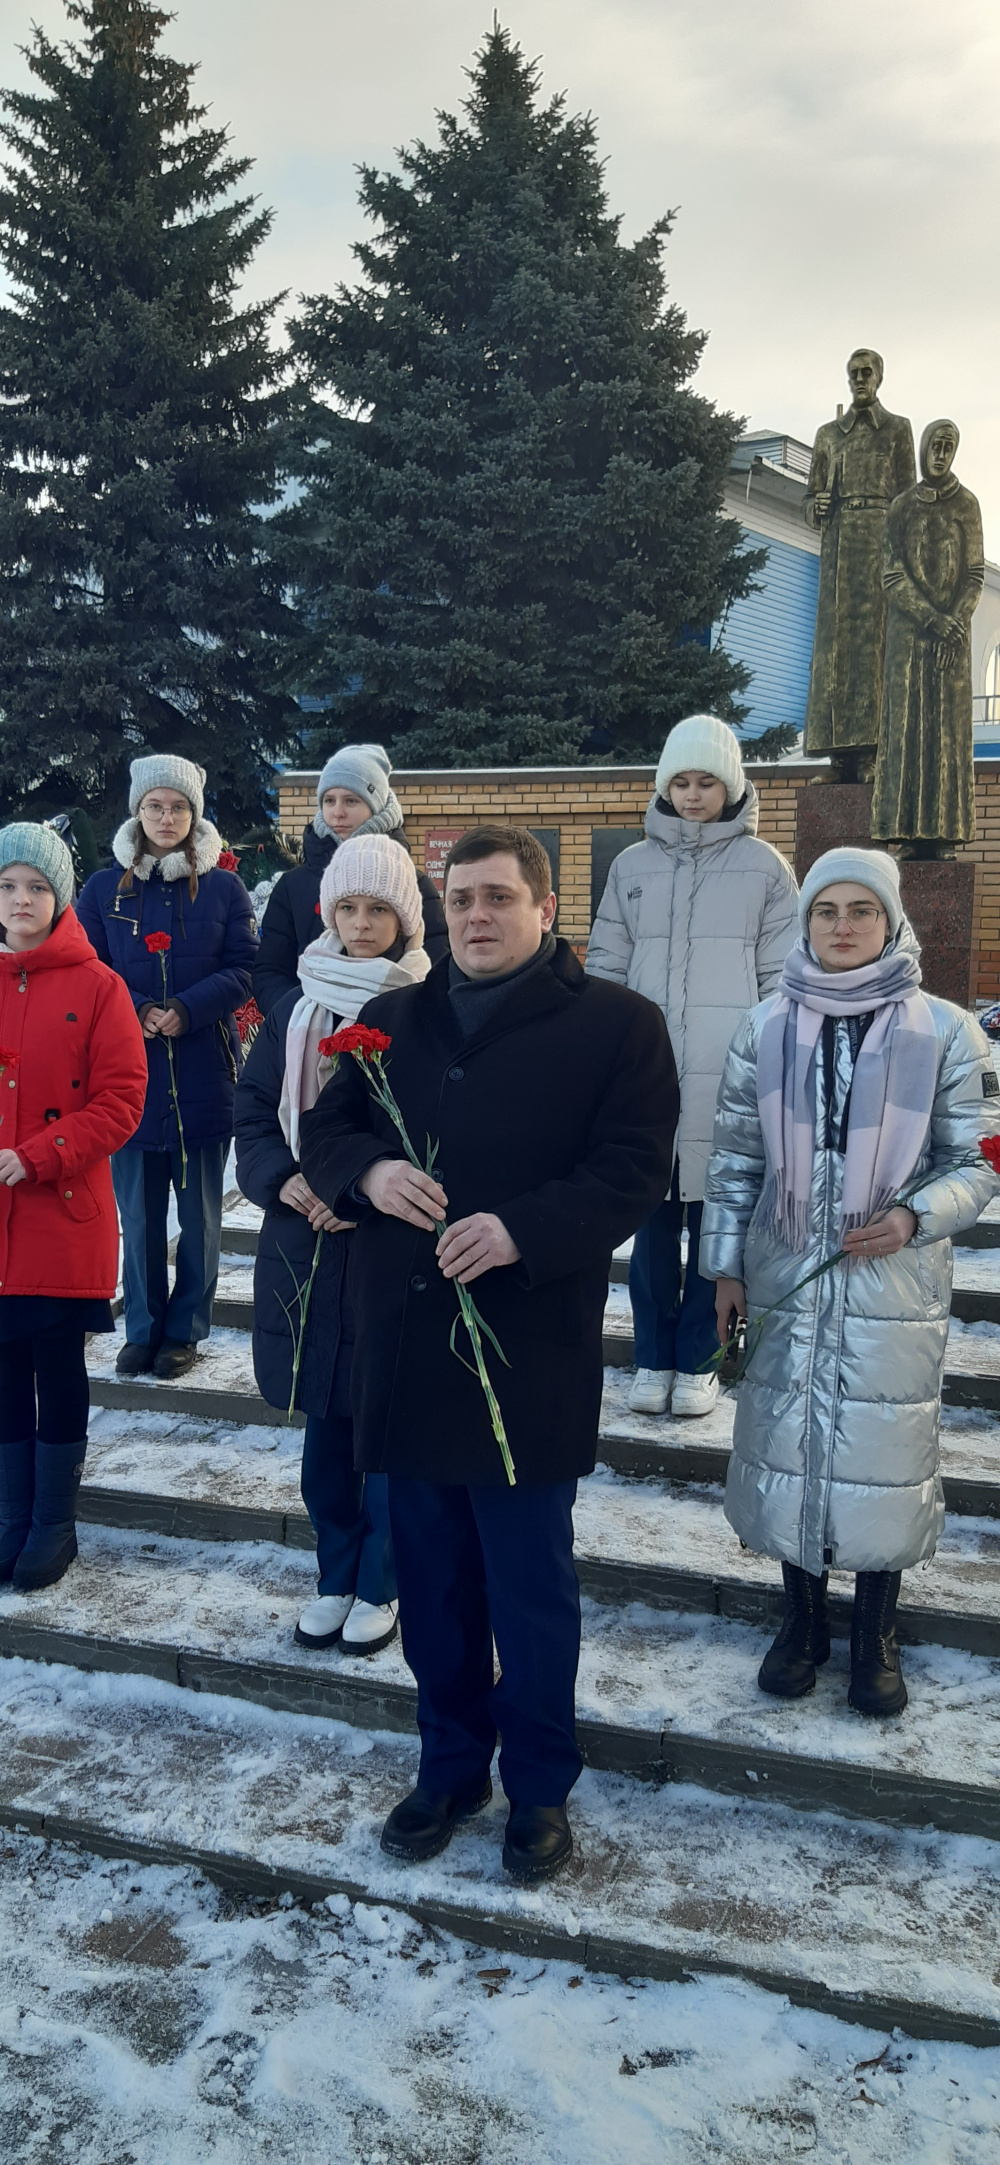 27 января- День снятия блокады Ленинграда